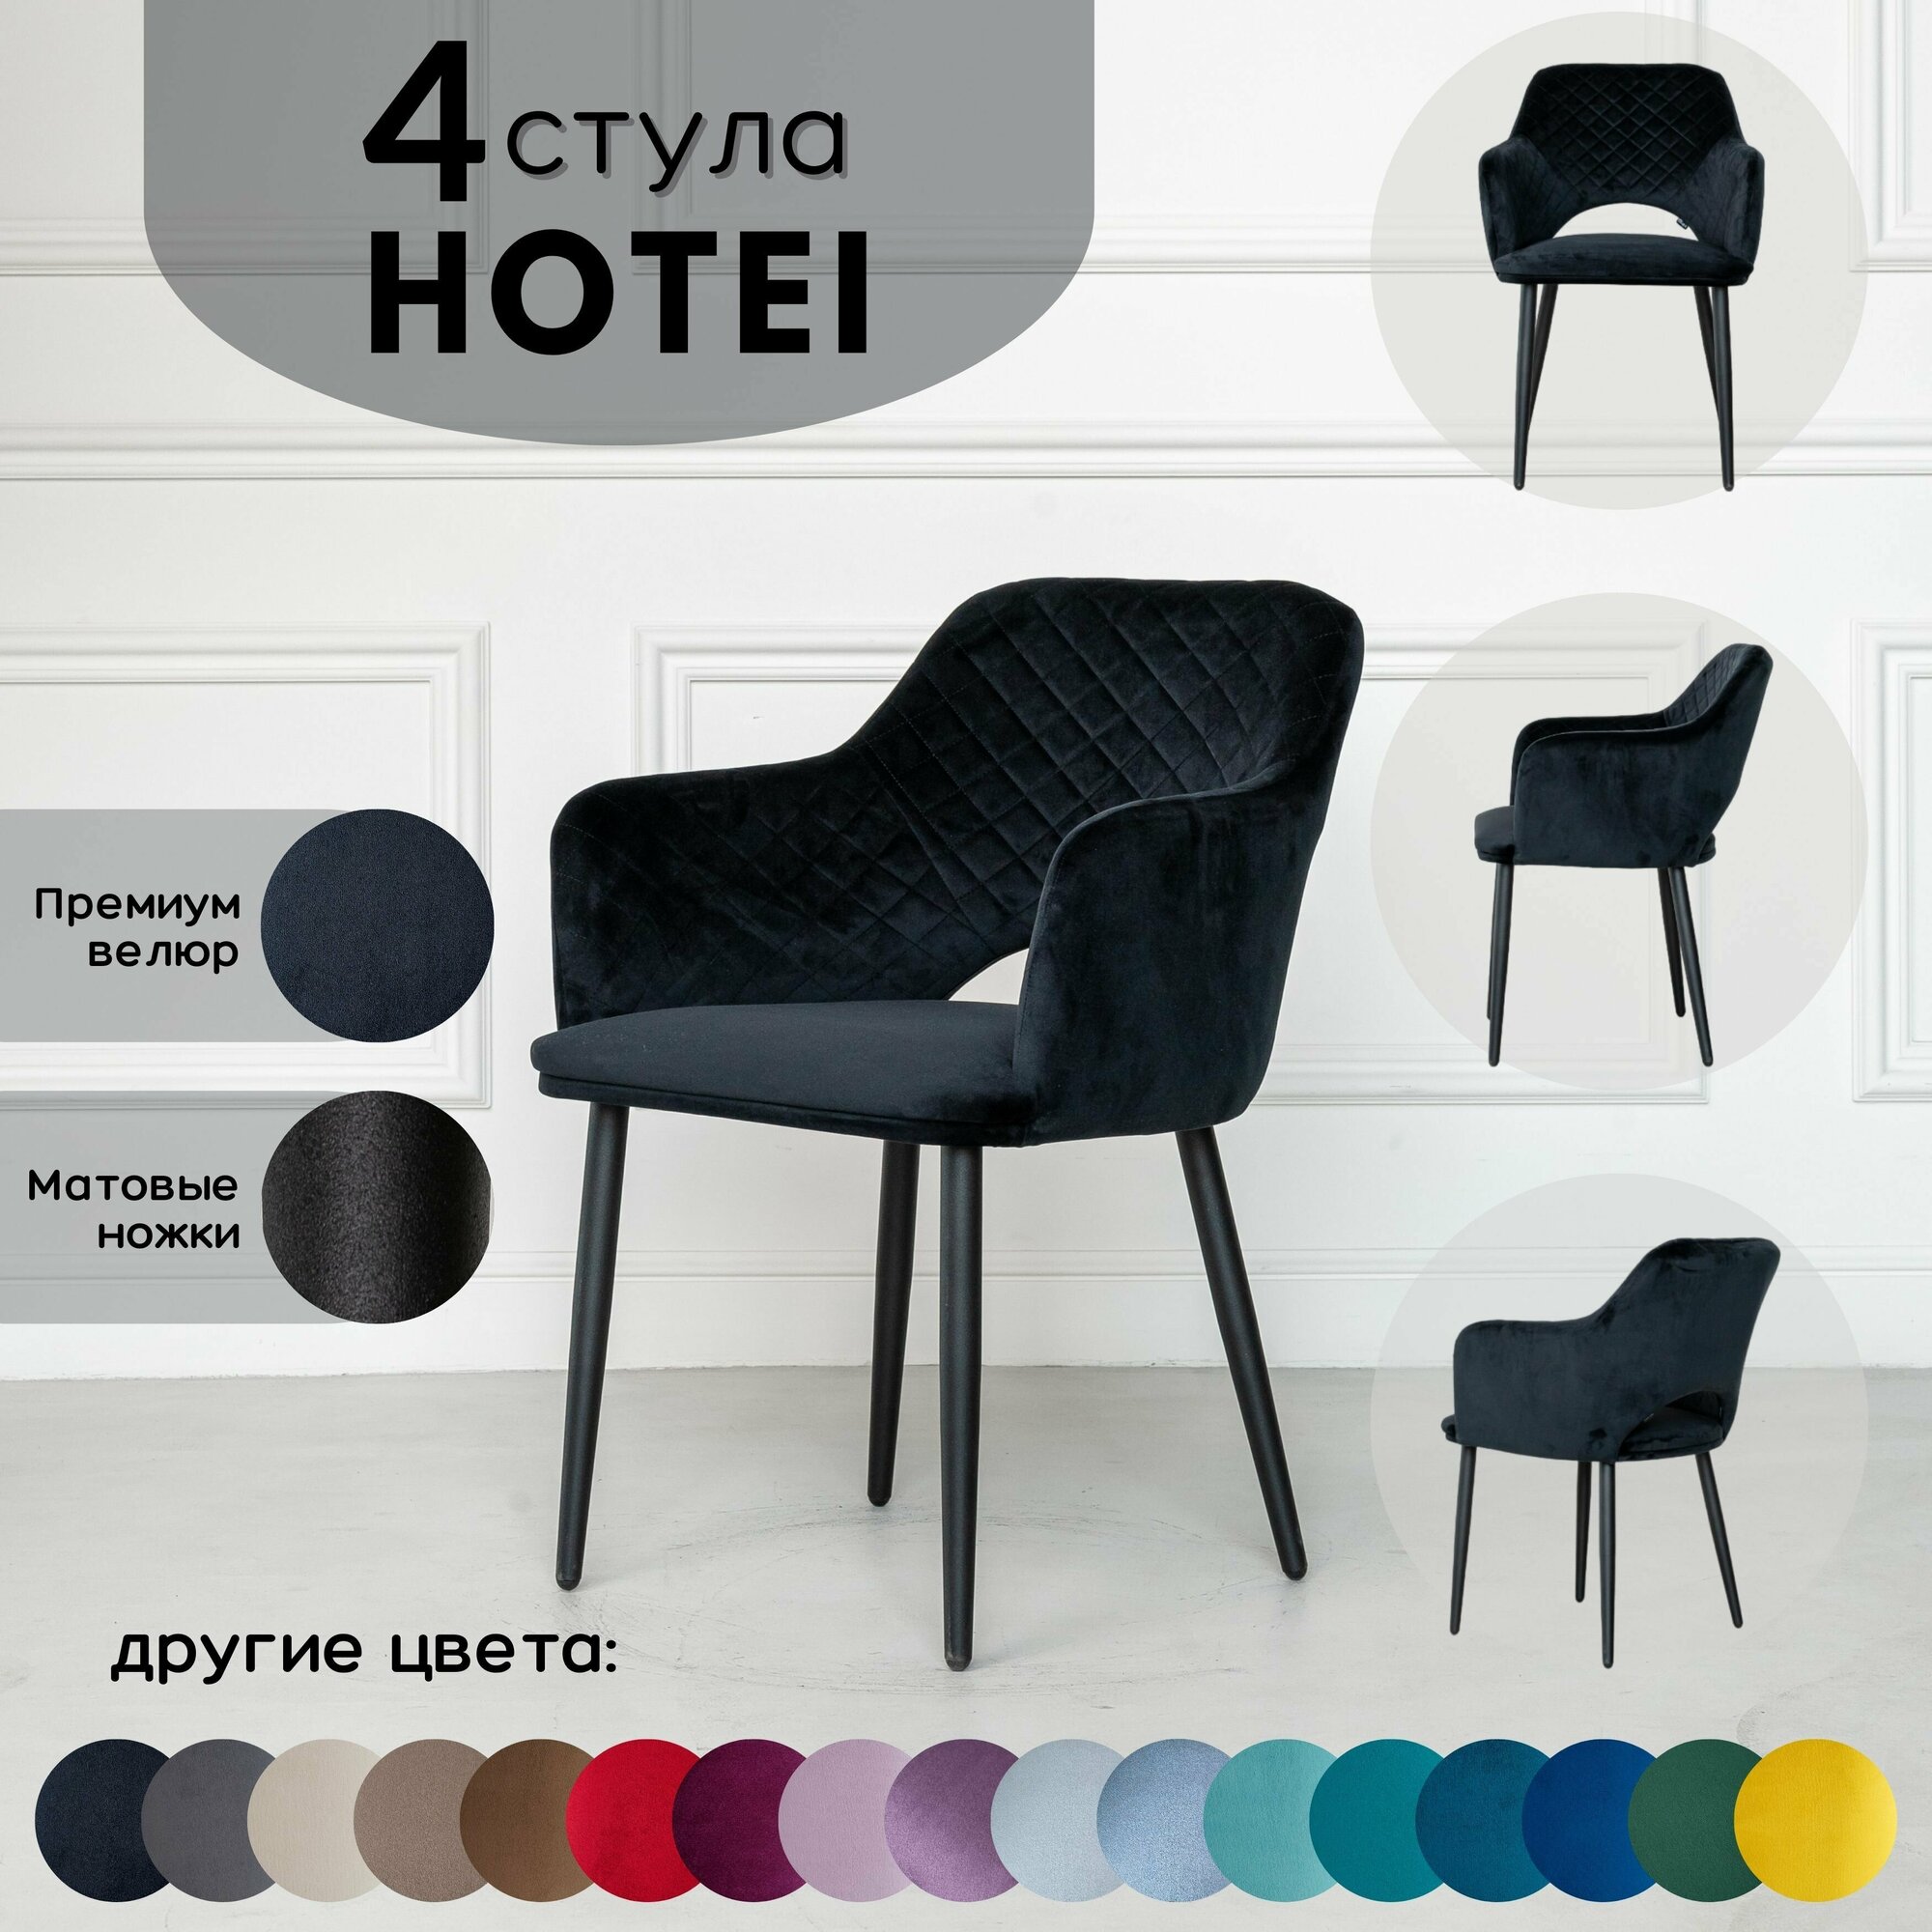 Стул кухонный Stuler chairs стул для кухни Hotei 4 шт, Комплект мягких стульев, Черный велюр черные матовые ножки